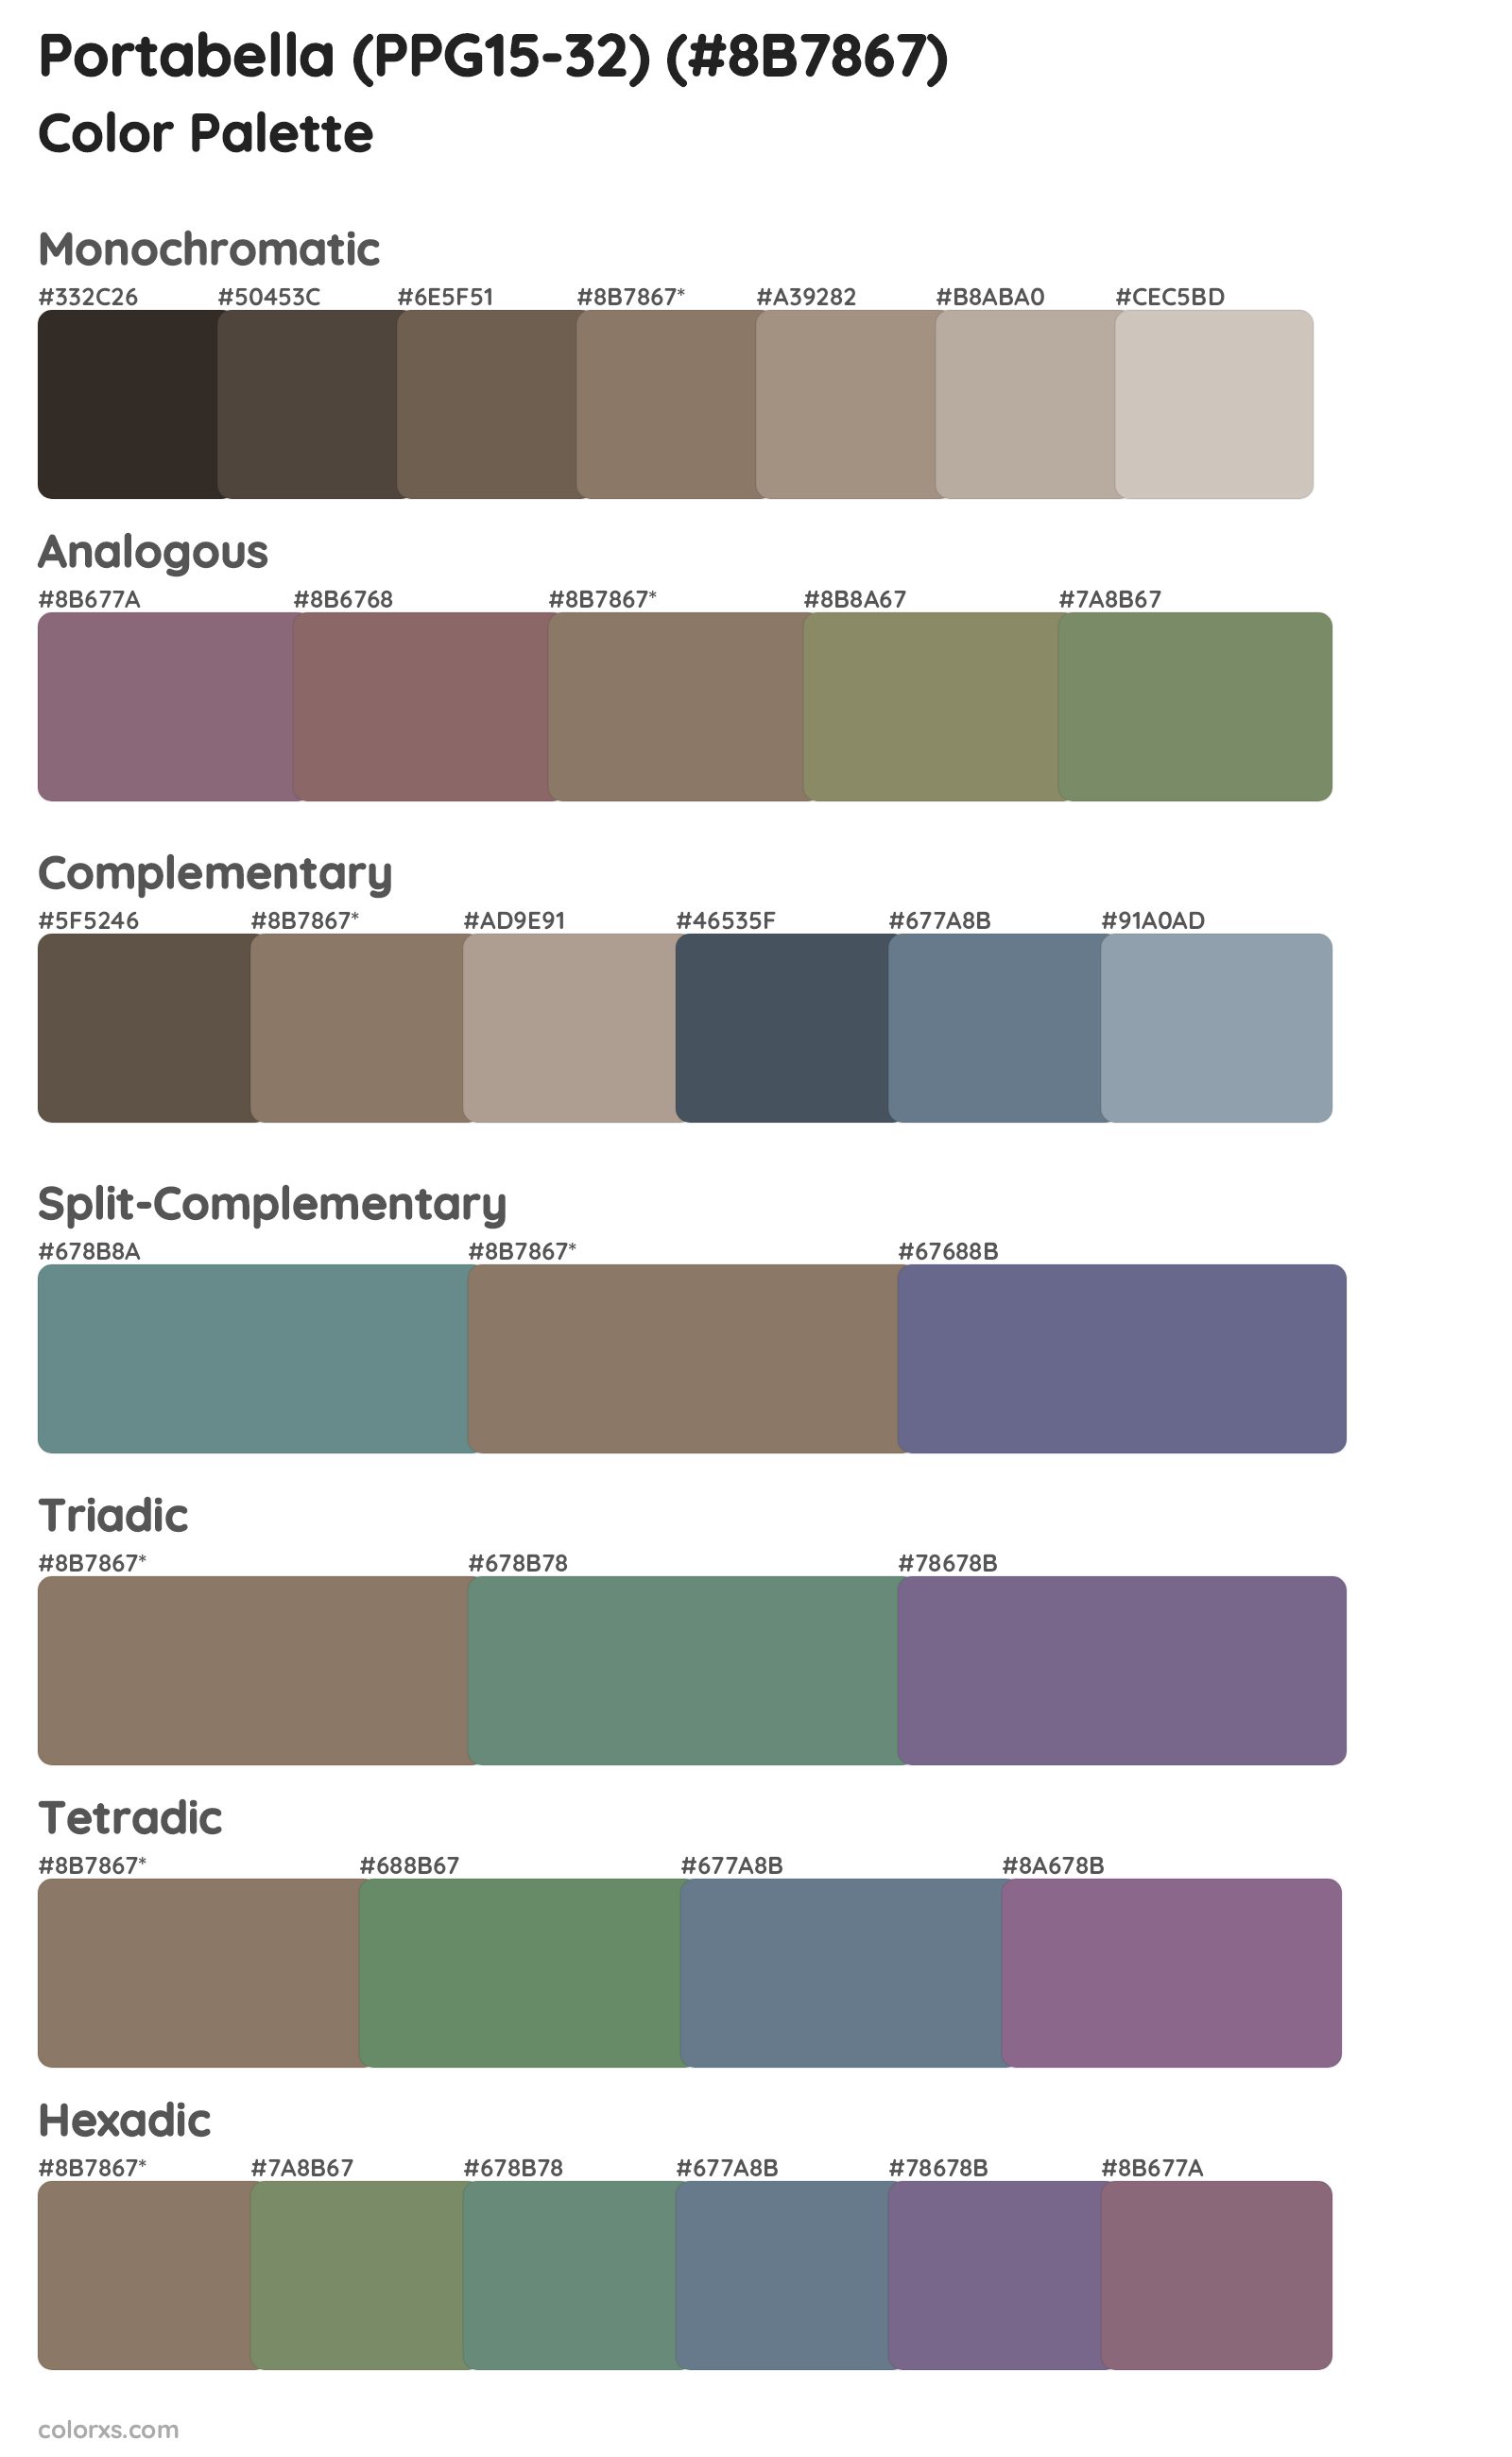 Portabella (PPG15-32) Color Scheme Palettes